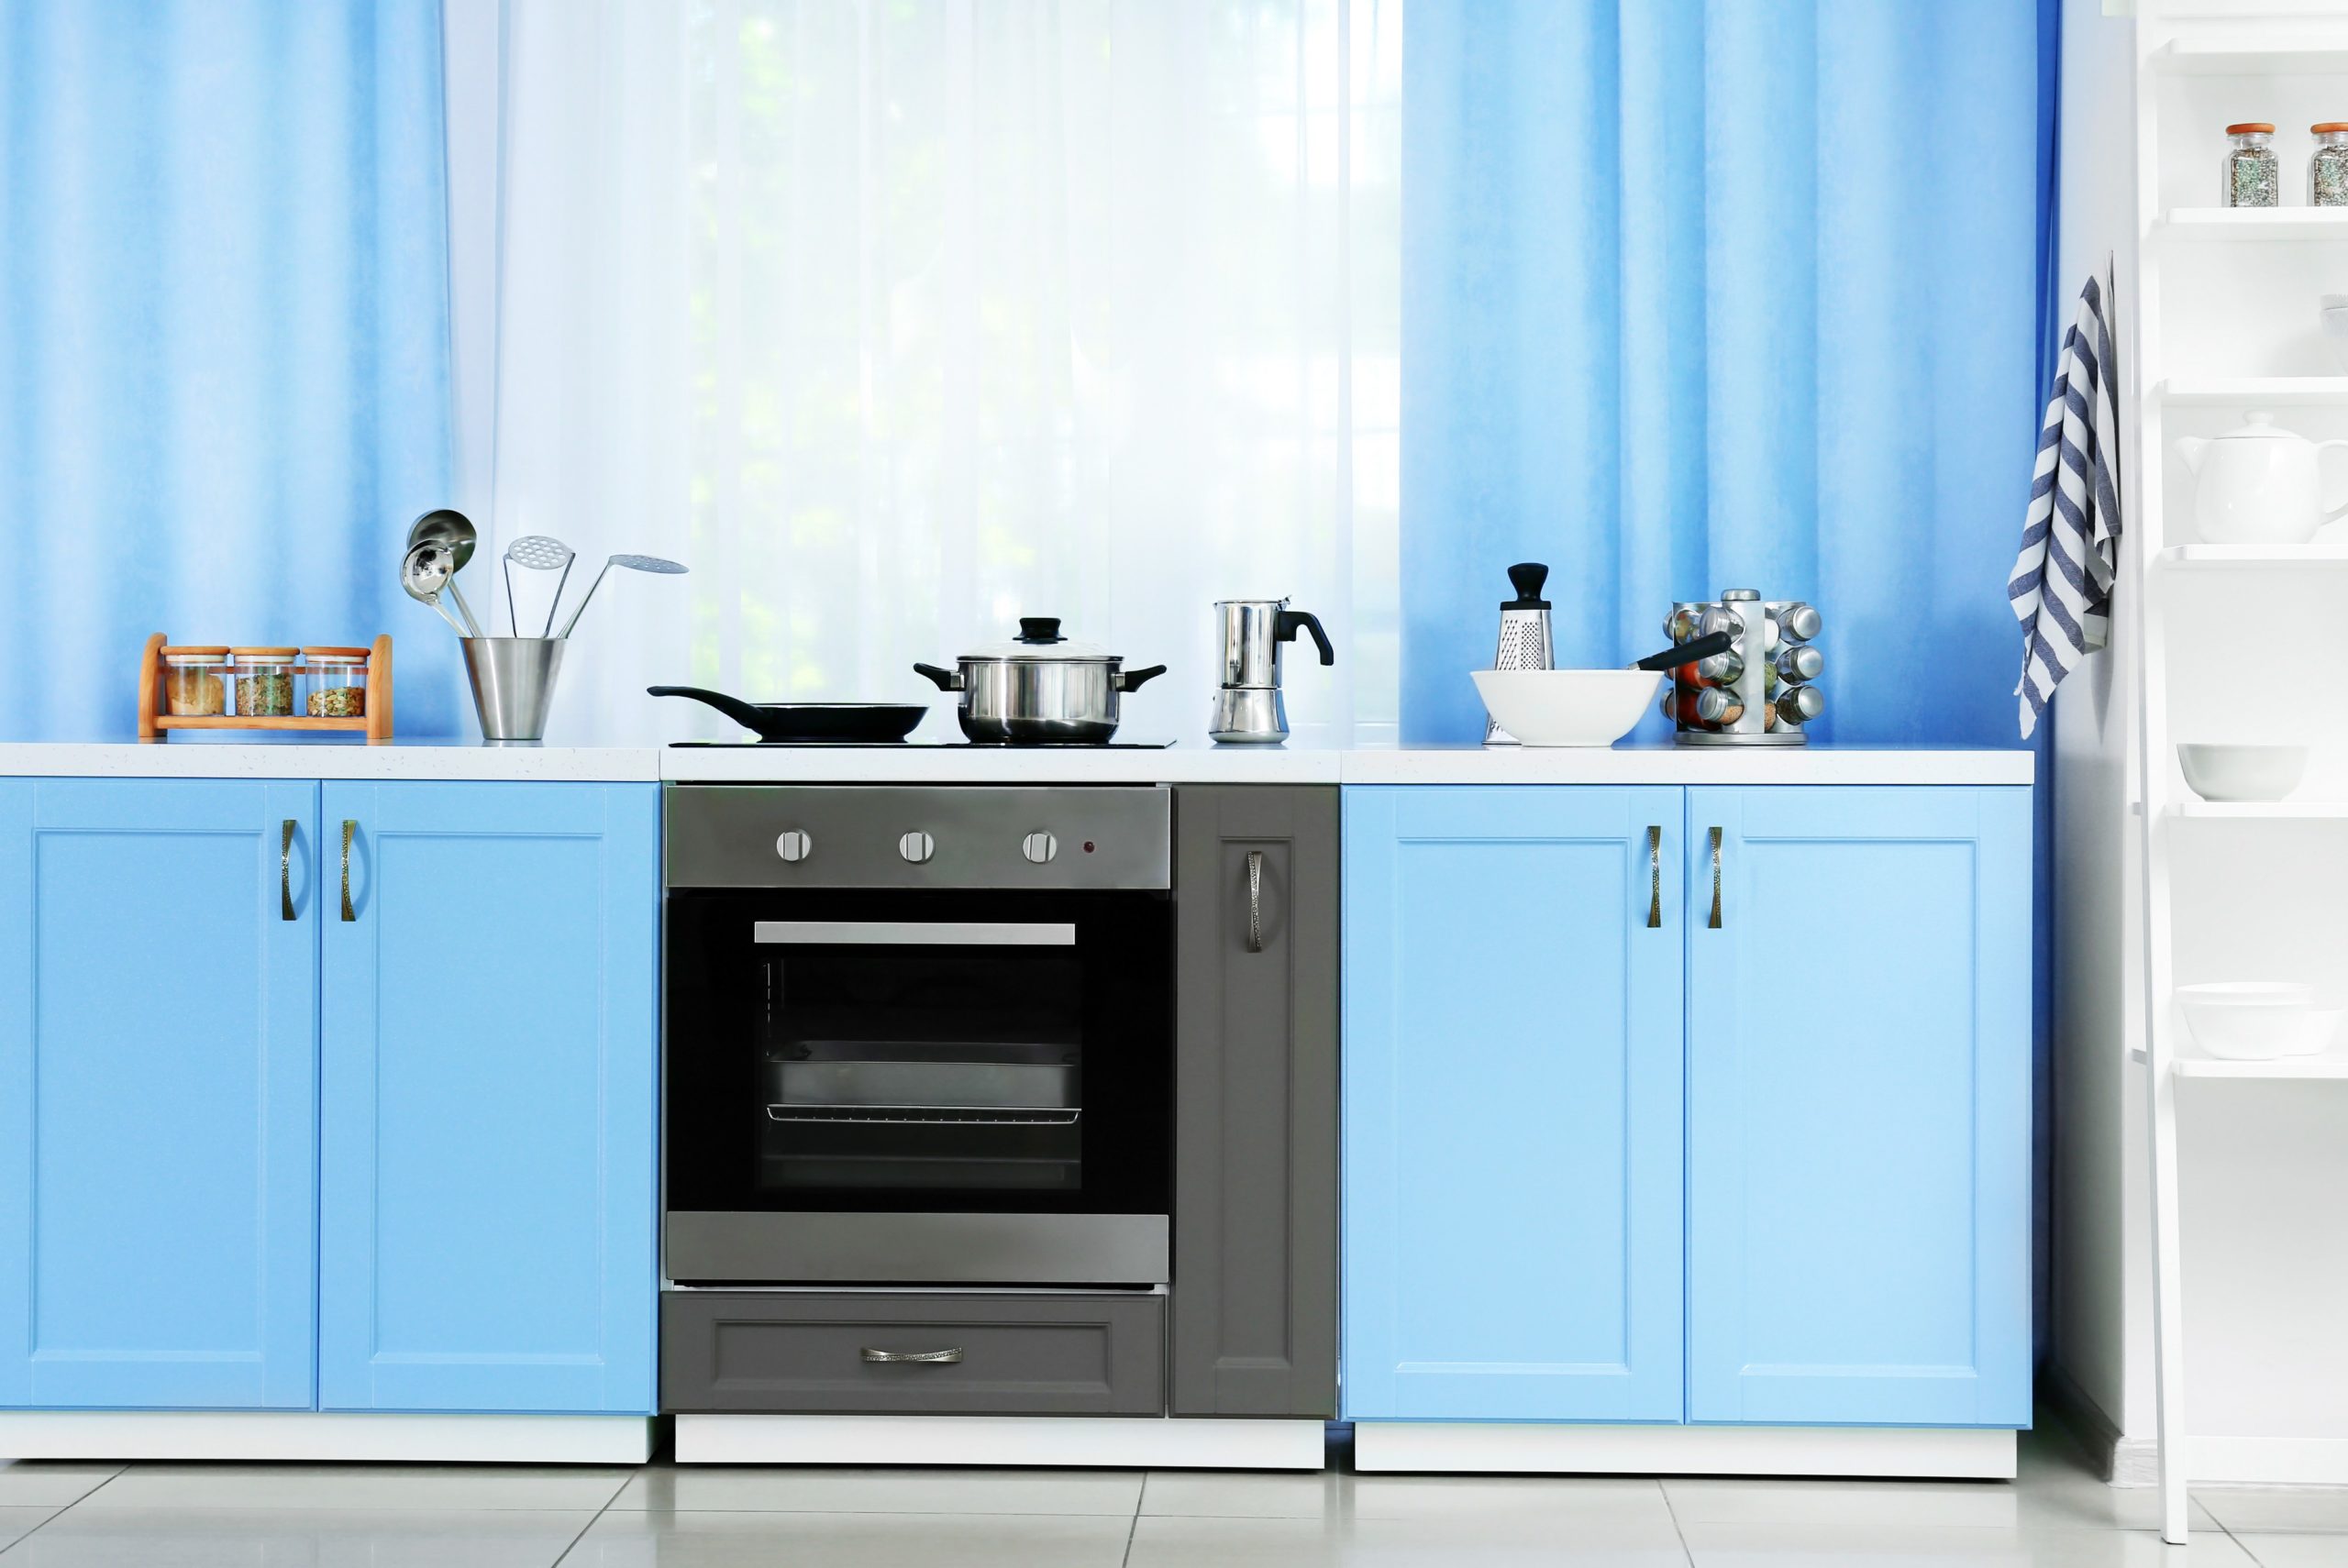 <img src="blue.jpg" alt="blue curtains in blue kitchen"/> 